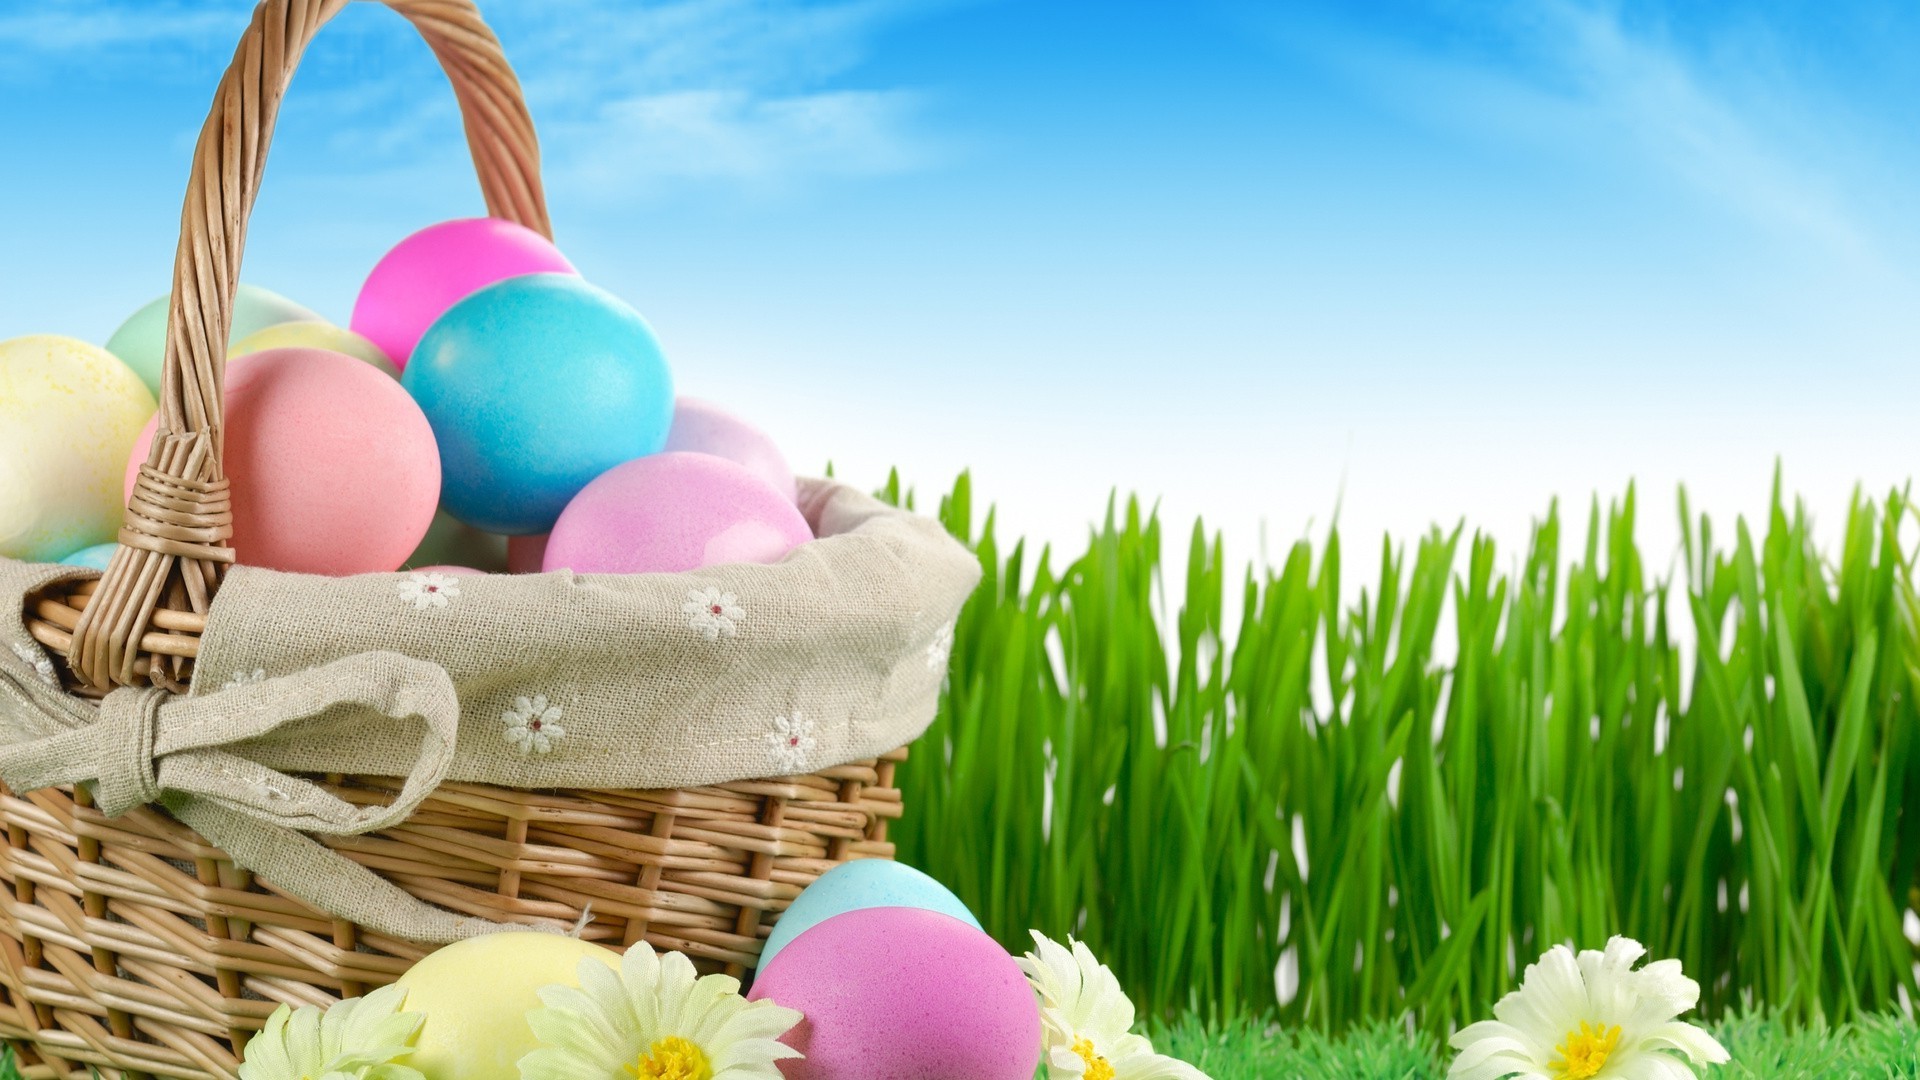 Фото бесплатно цветные яйца, корзина с яйцами, пасха